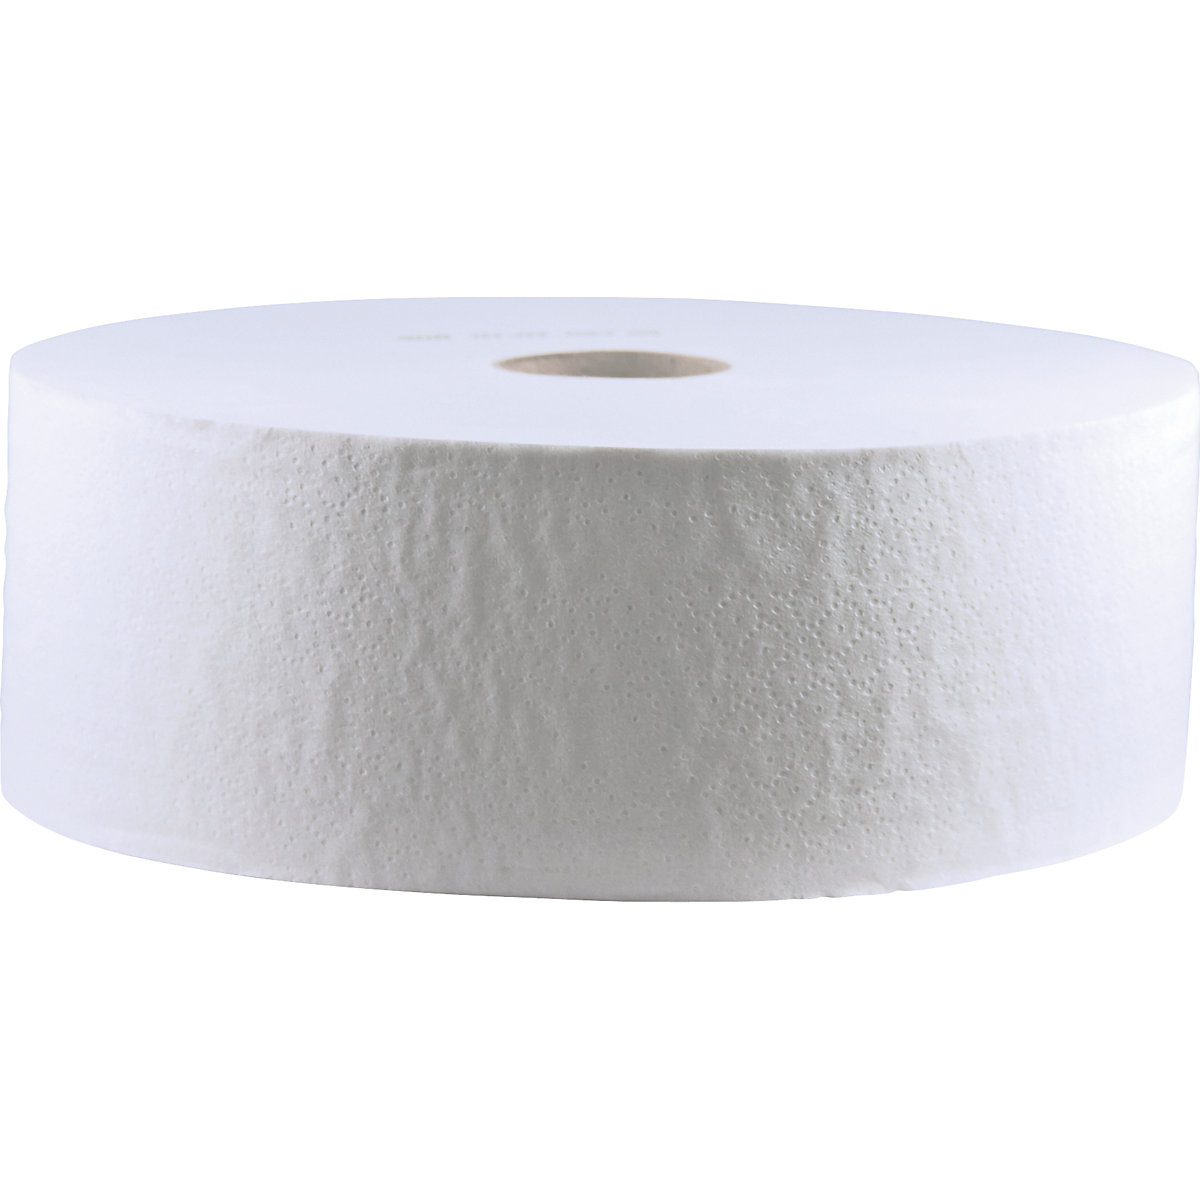 Velike role toaletnog papira od celuloze – CWS